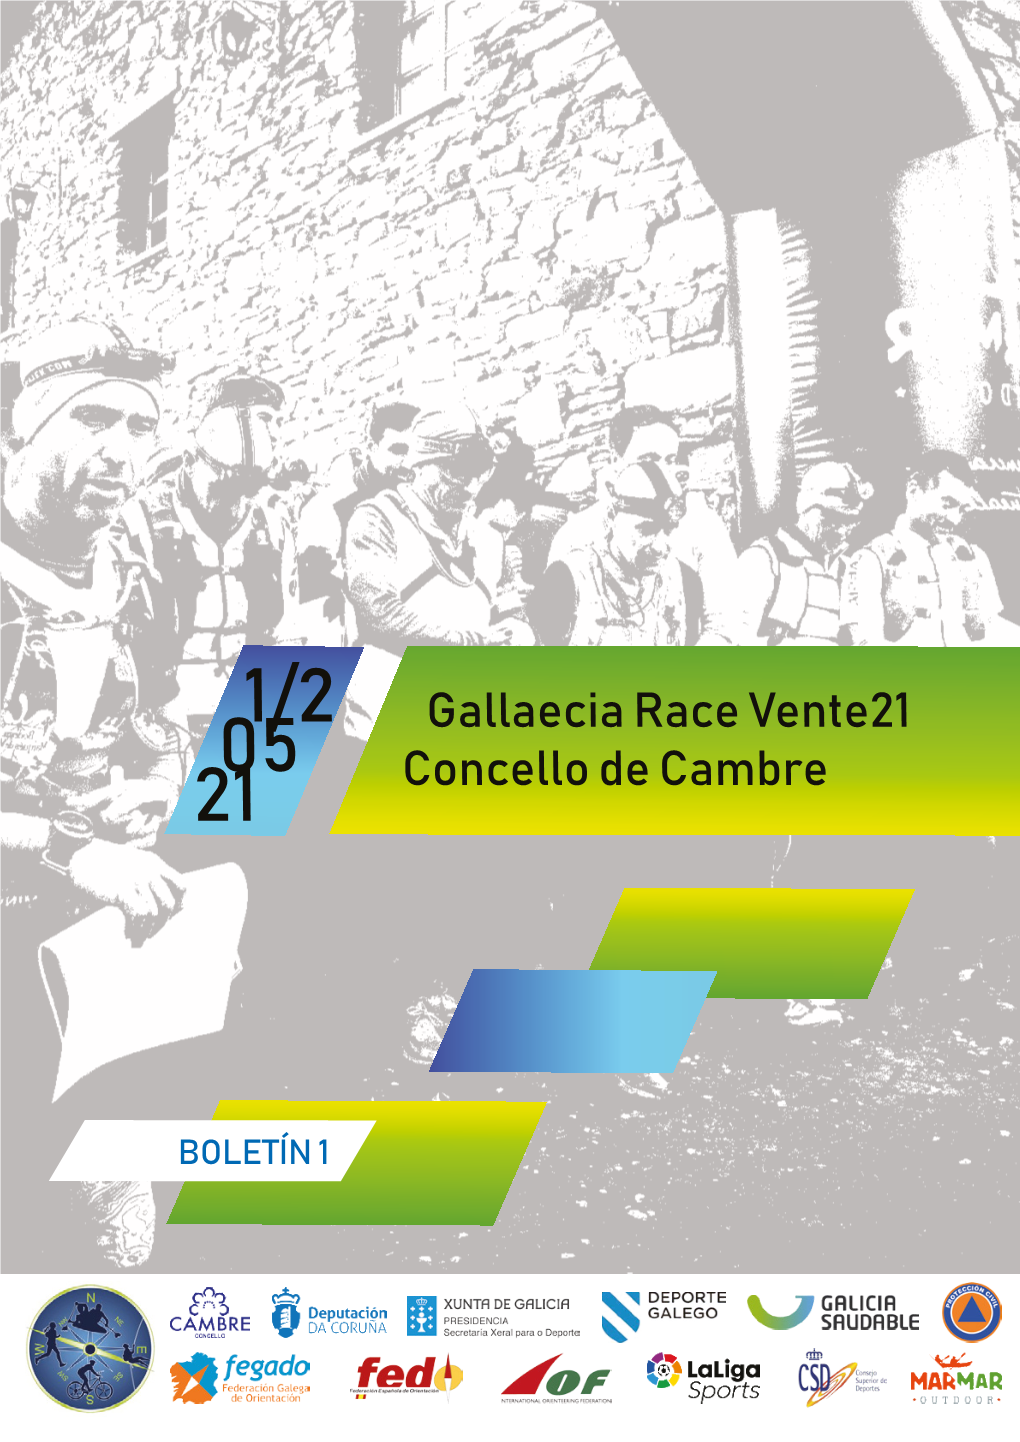 Gallaecia Race Vente21 Concello De Cambre